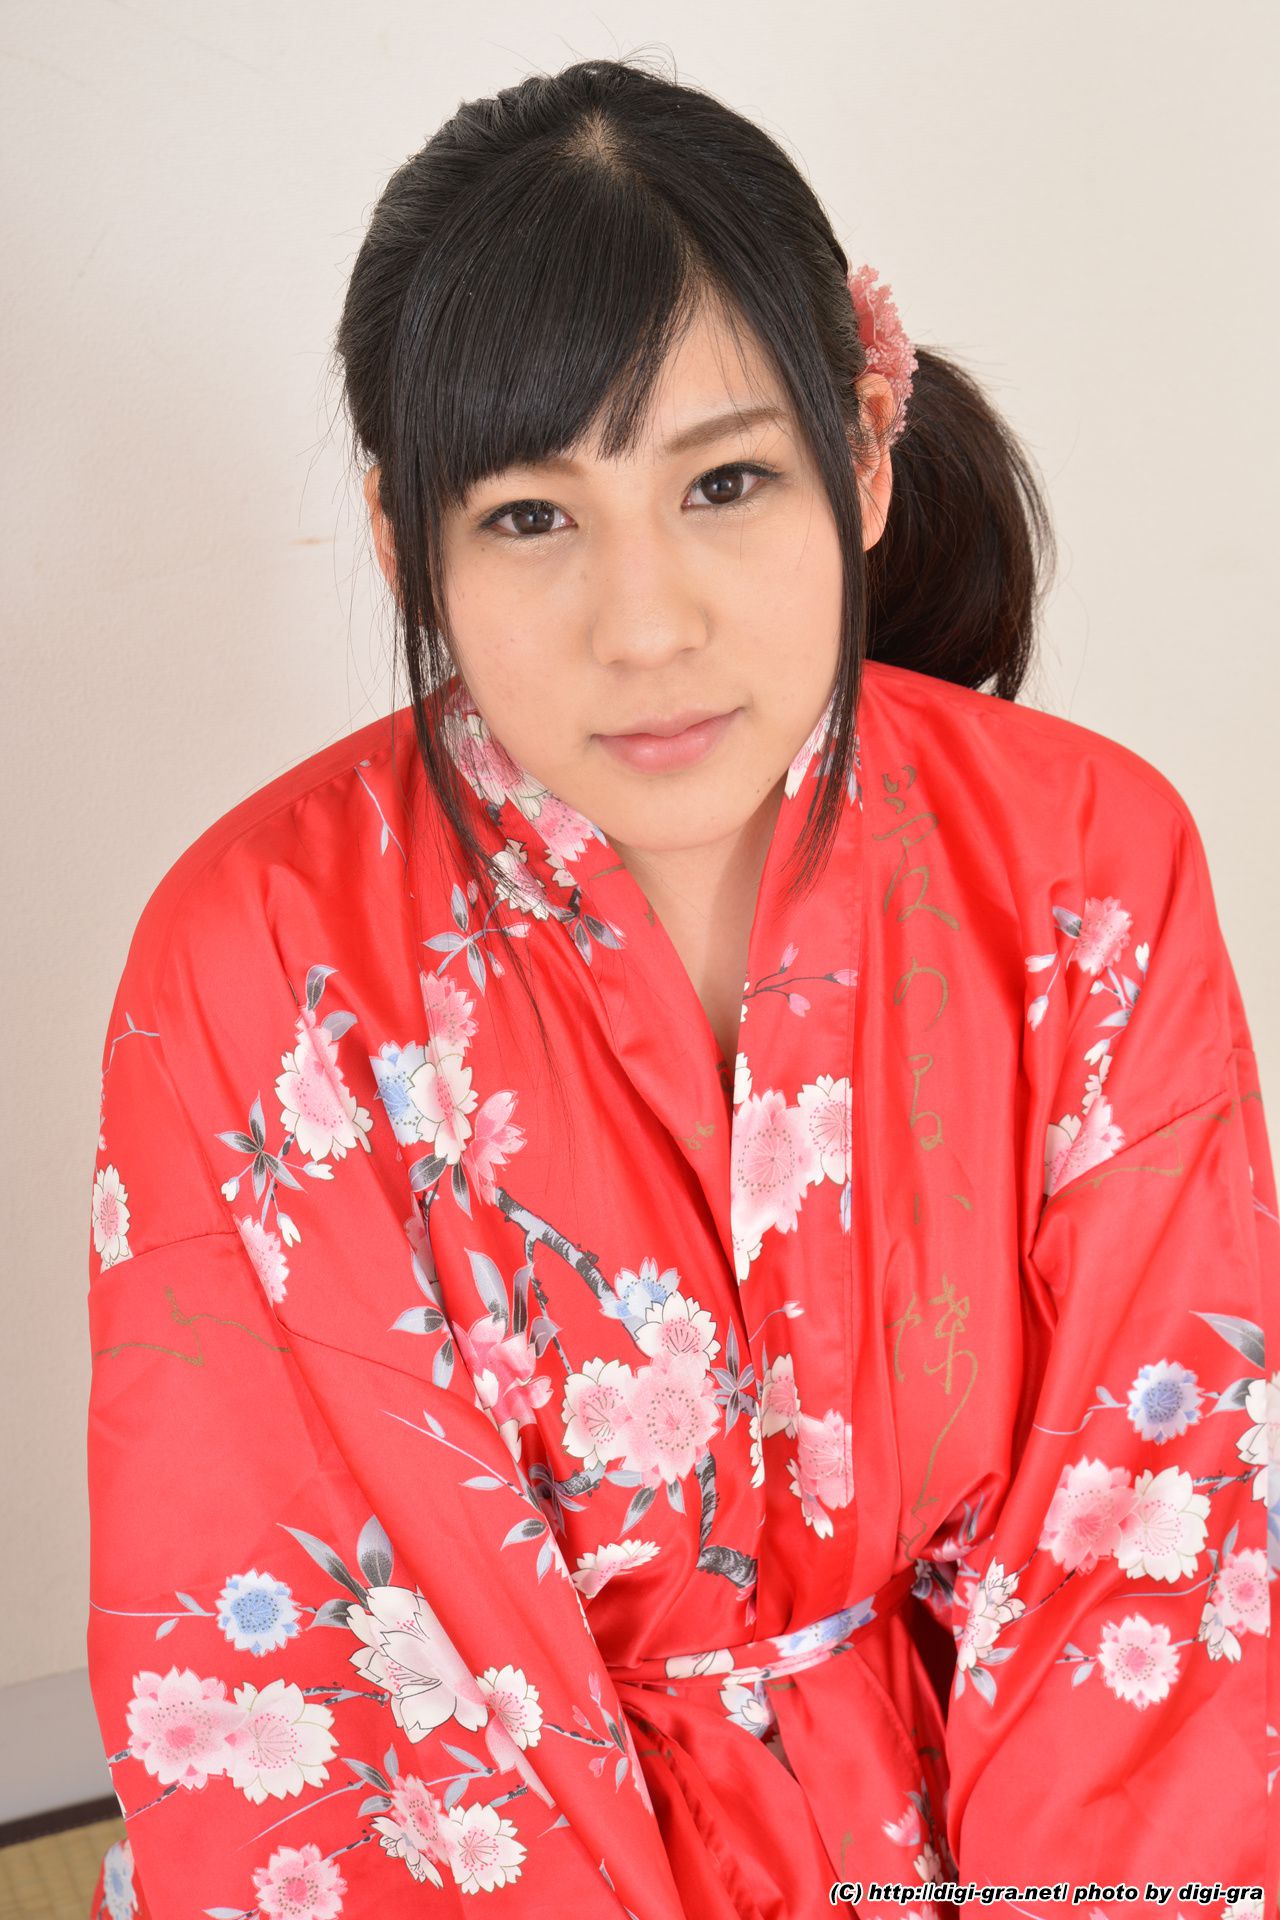 Kawami Yuka Kimono Temptation Set01 [Digi-Gra Digigra] Pagina 13 No.76070a